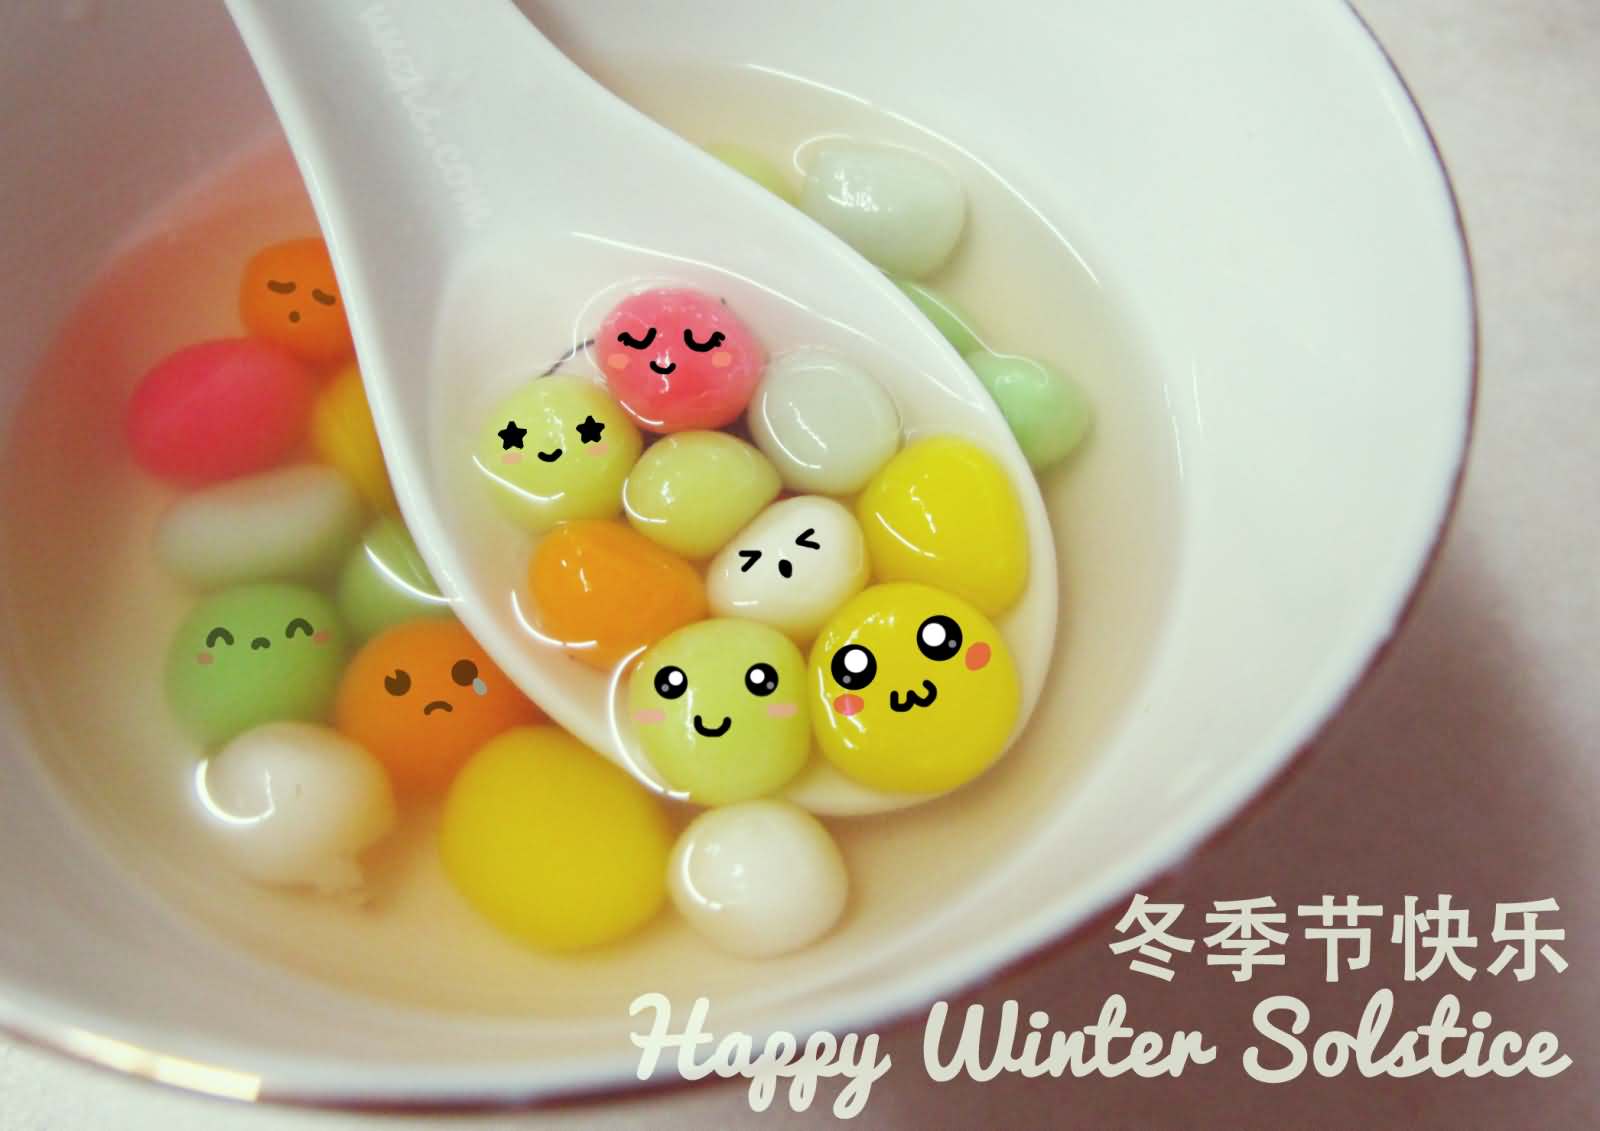 Happy Winter Solstice Smiley Eggs Soup